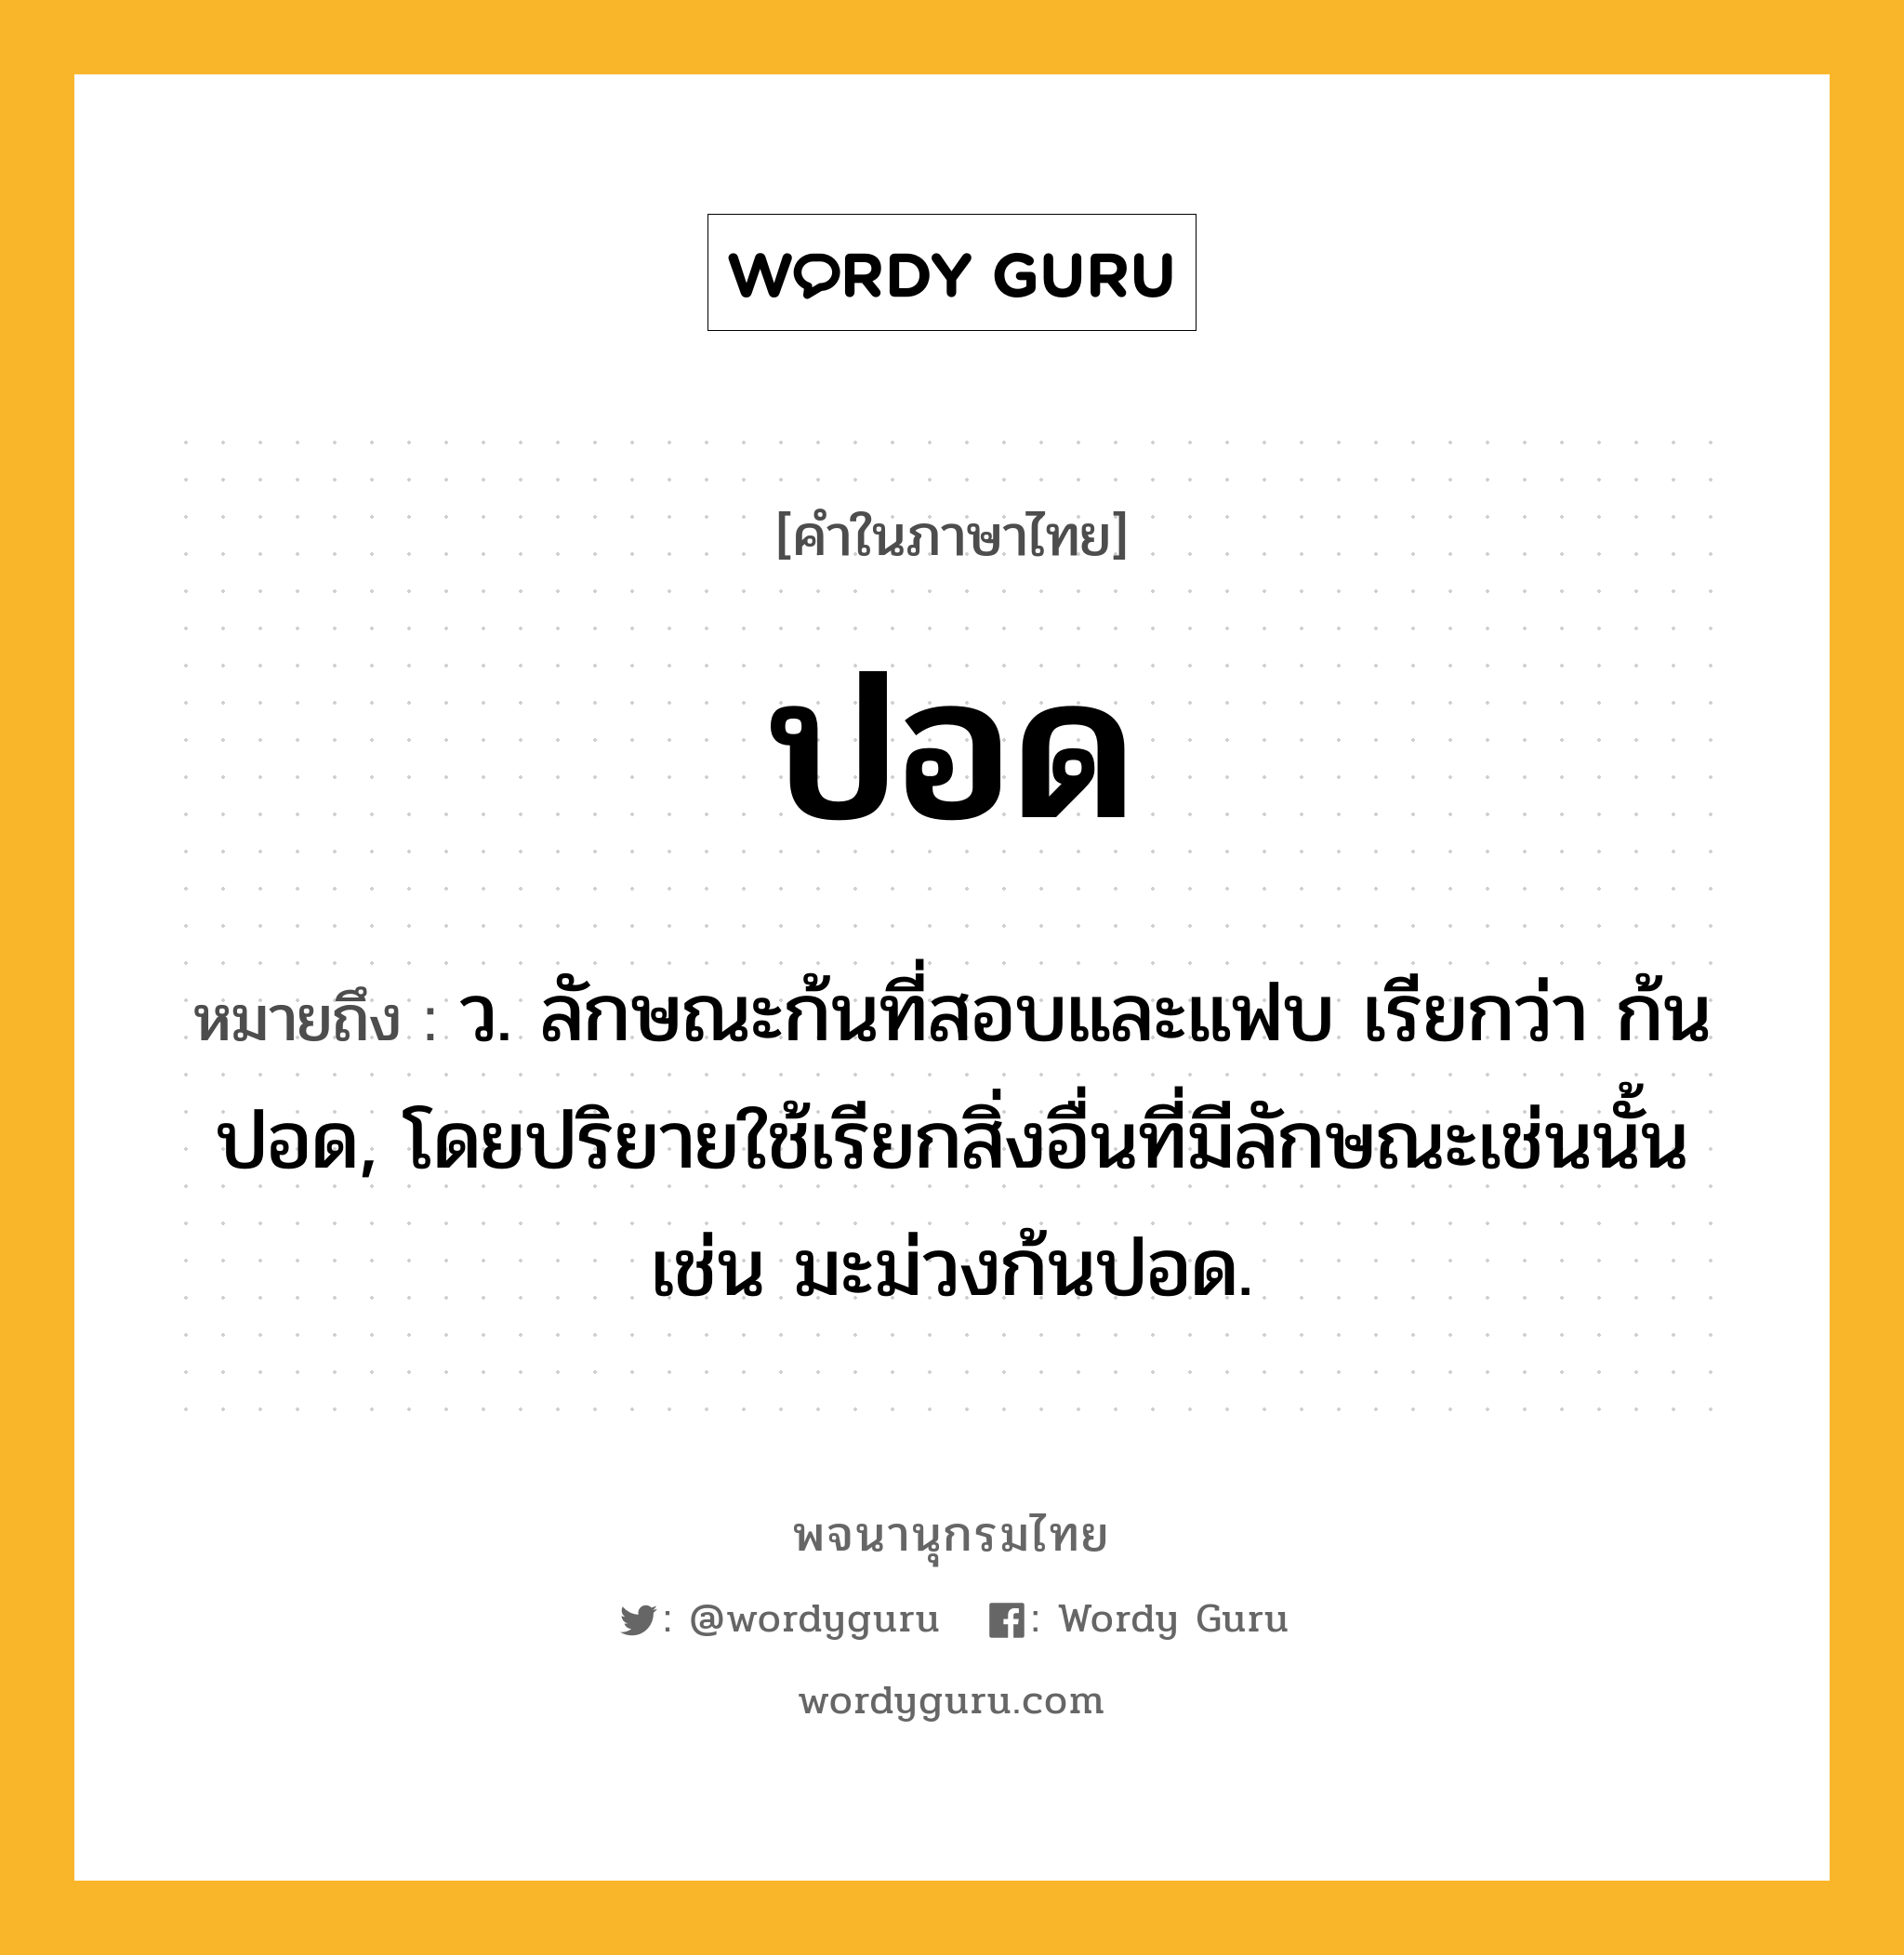 ปอด หมายถึงอะไร?, คำในภาษาไทย ปอด หมายถึง ว. ลักษณะก้นที่สอบและแฟบ เรียกว่า ก้นปอด, โดยปริยายใช้เรียกสิ่งอื่นที่มีลักษณะเช่นนั้น เช่น มะม่วงก้นปอด.